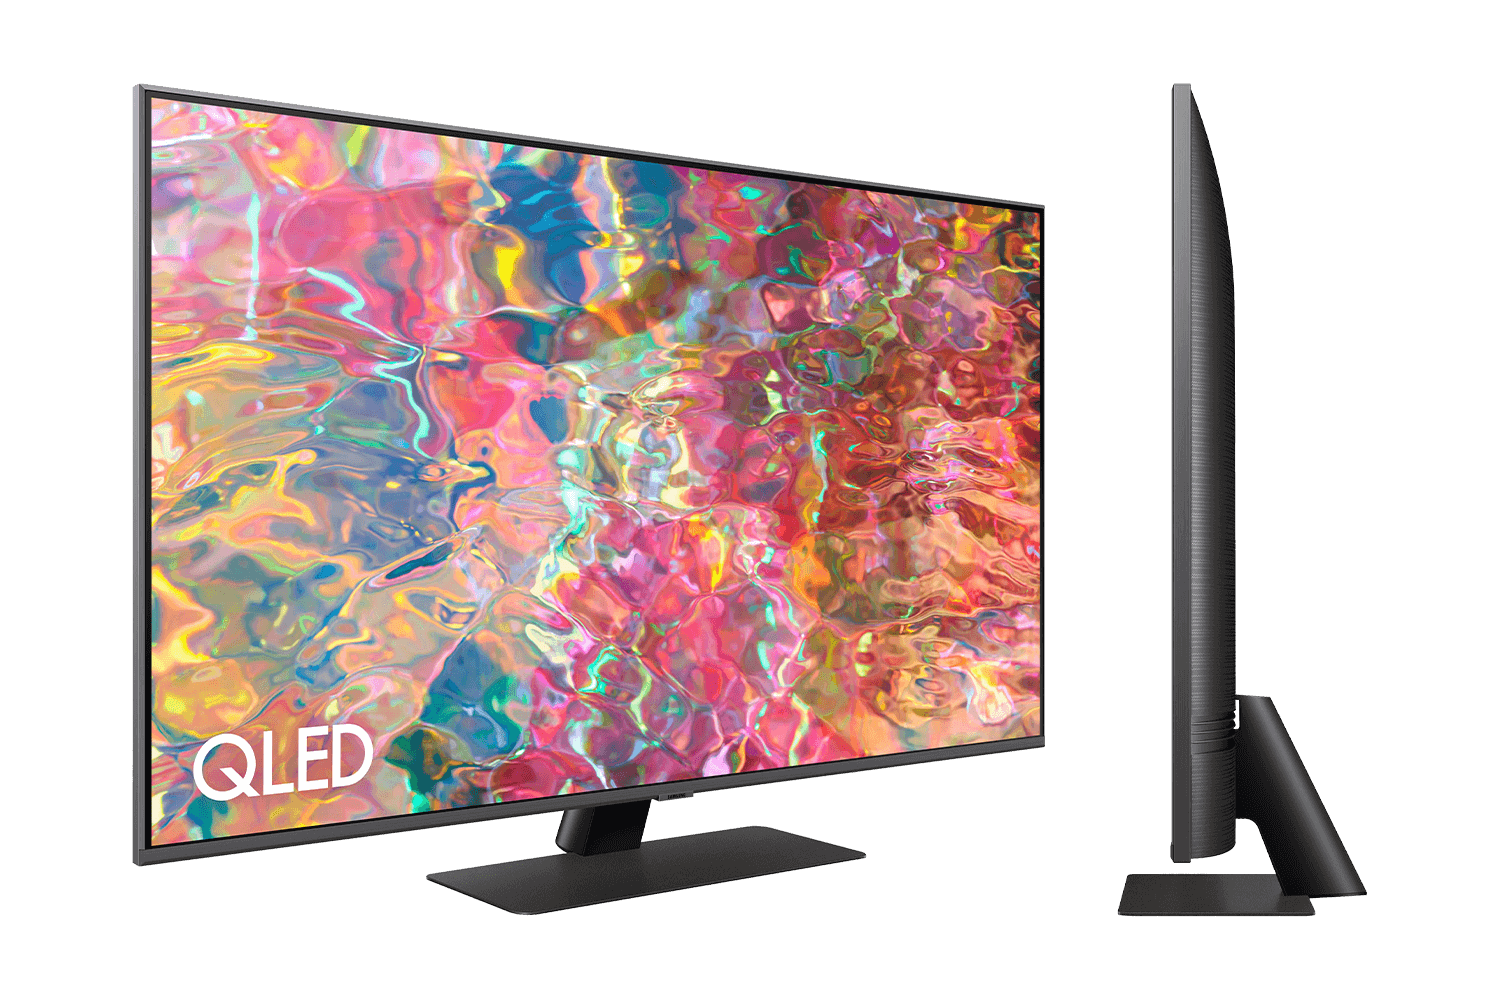 Samsung muestra un televisor de 55 pulgadas preparado para las 3D